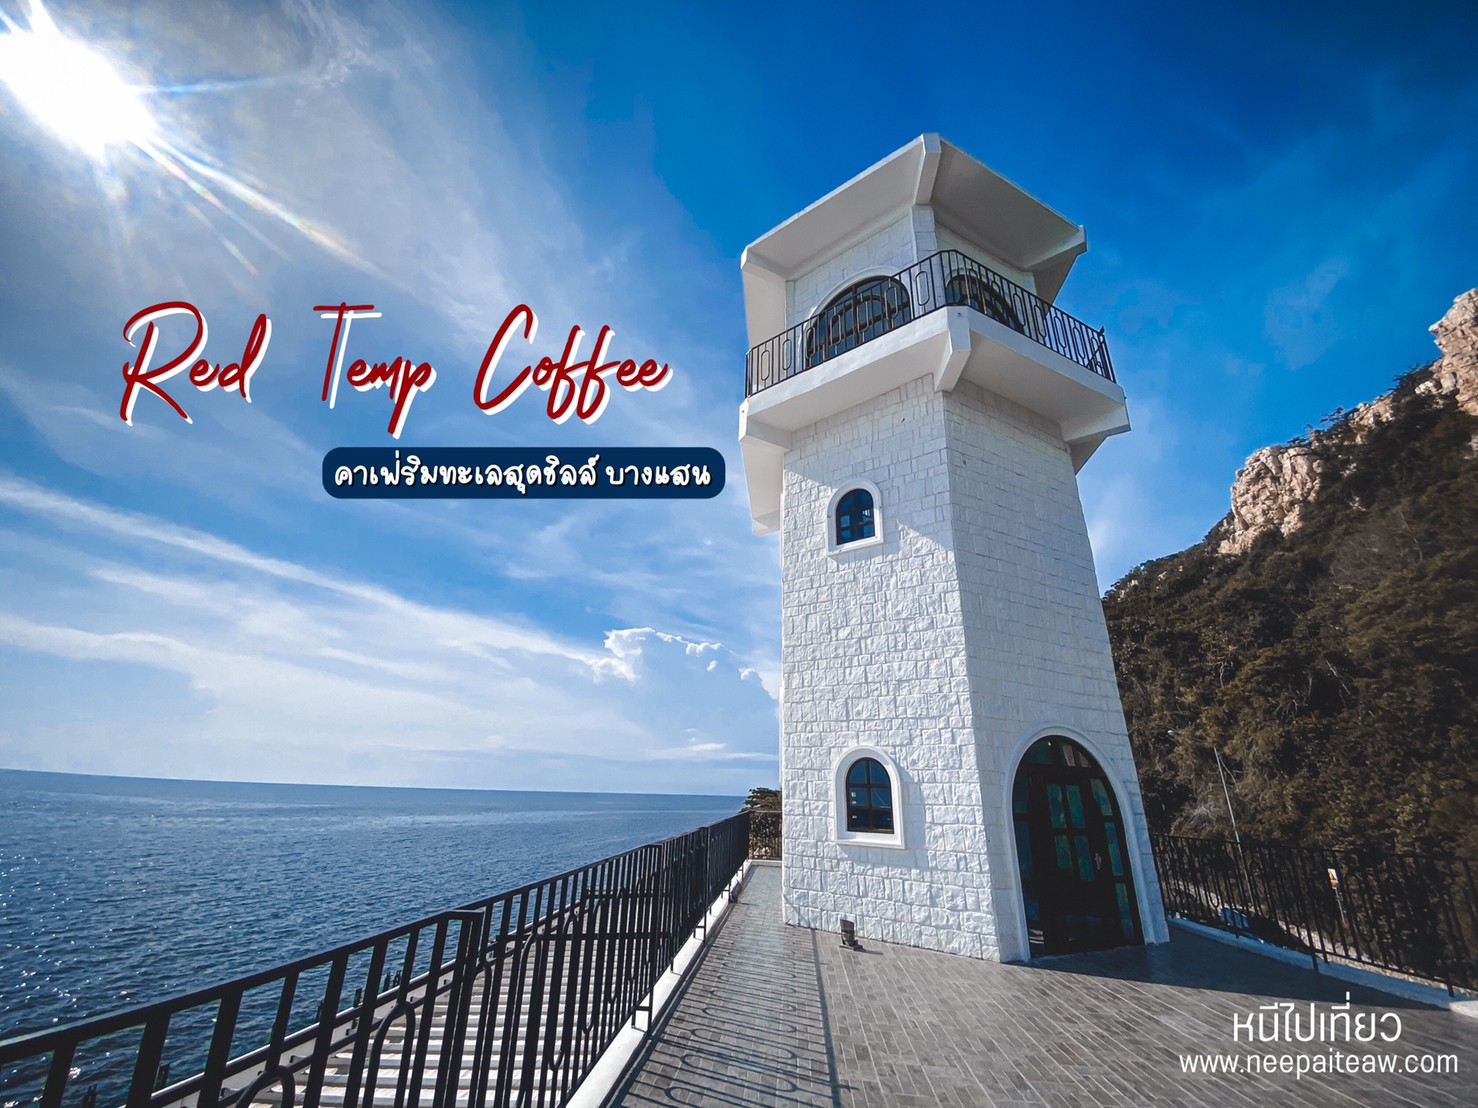 Red Temp Coffee บางแสน คาเฟ่ริมทะเล สุดชิลล์ ฟิลไมอามี่